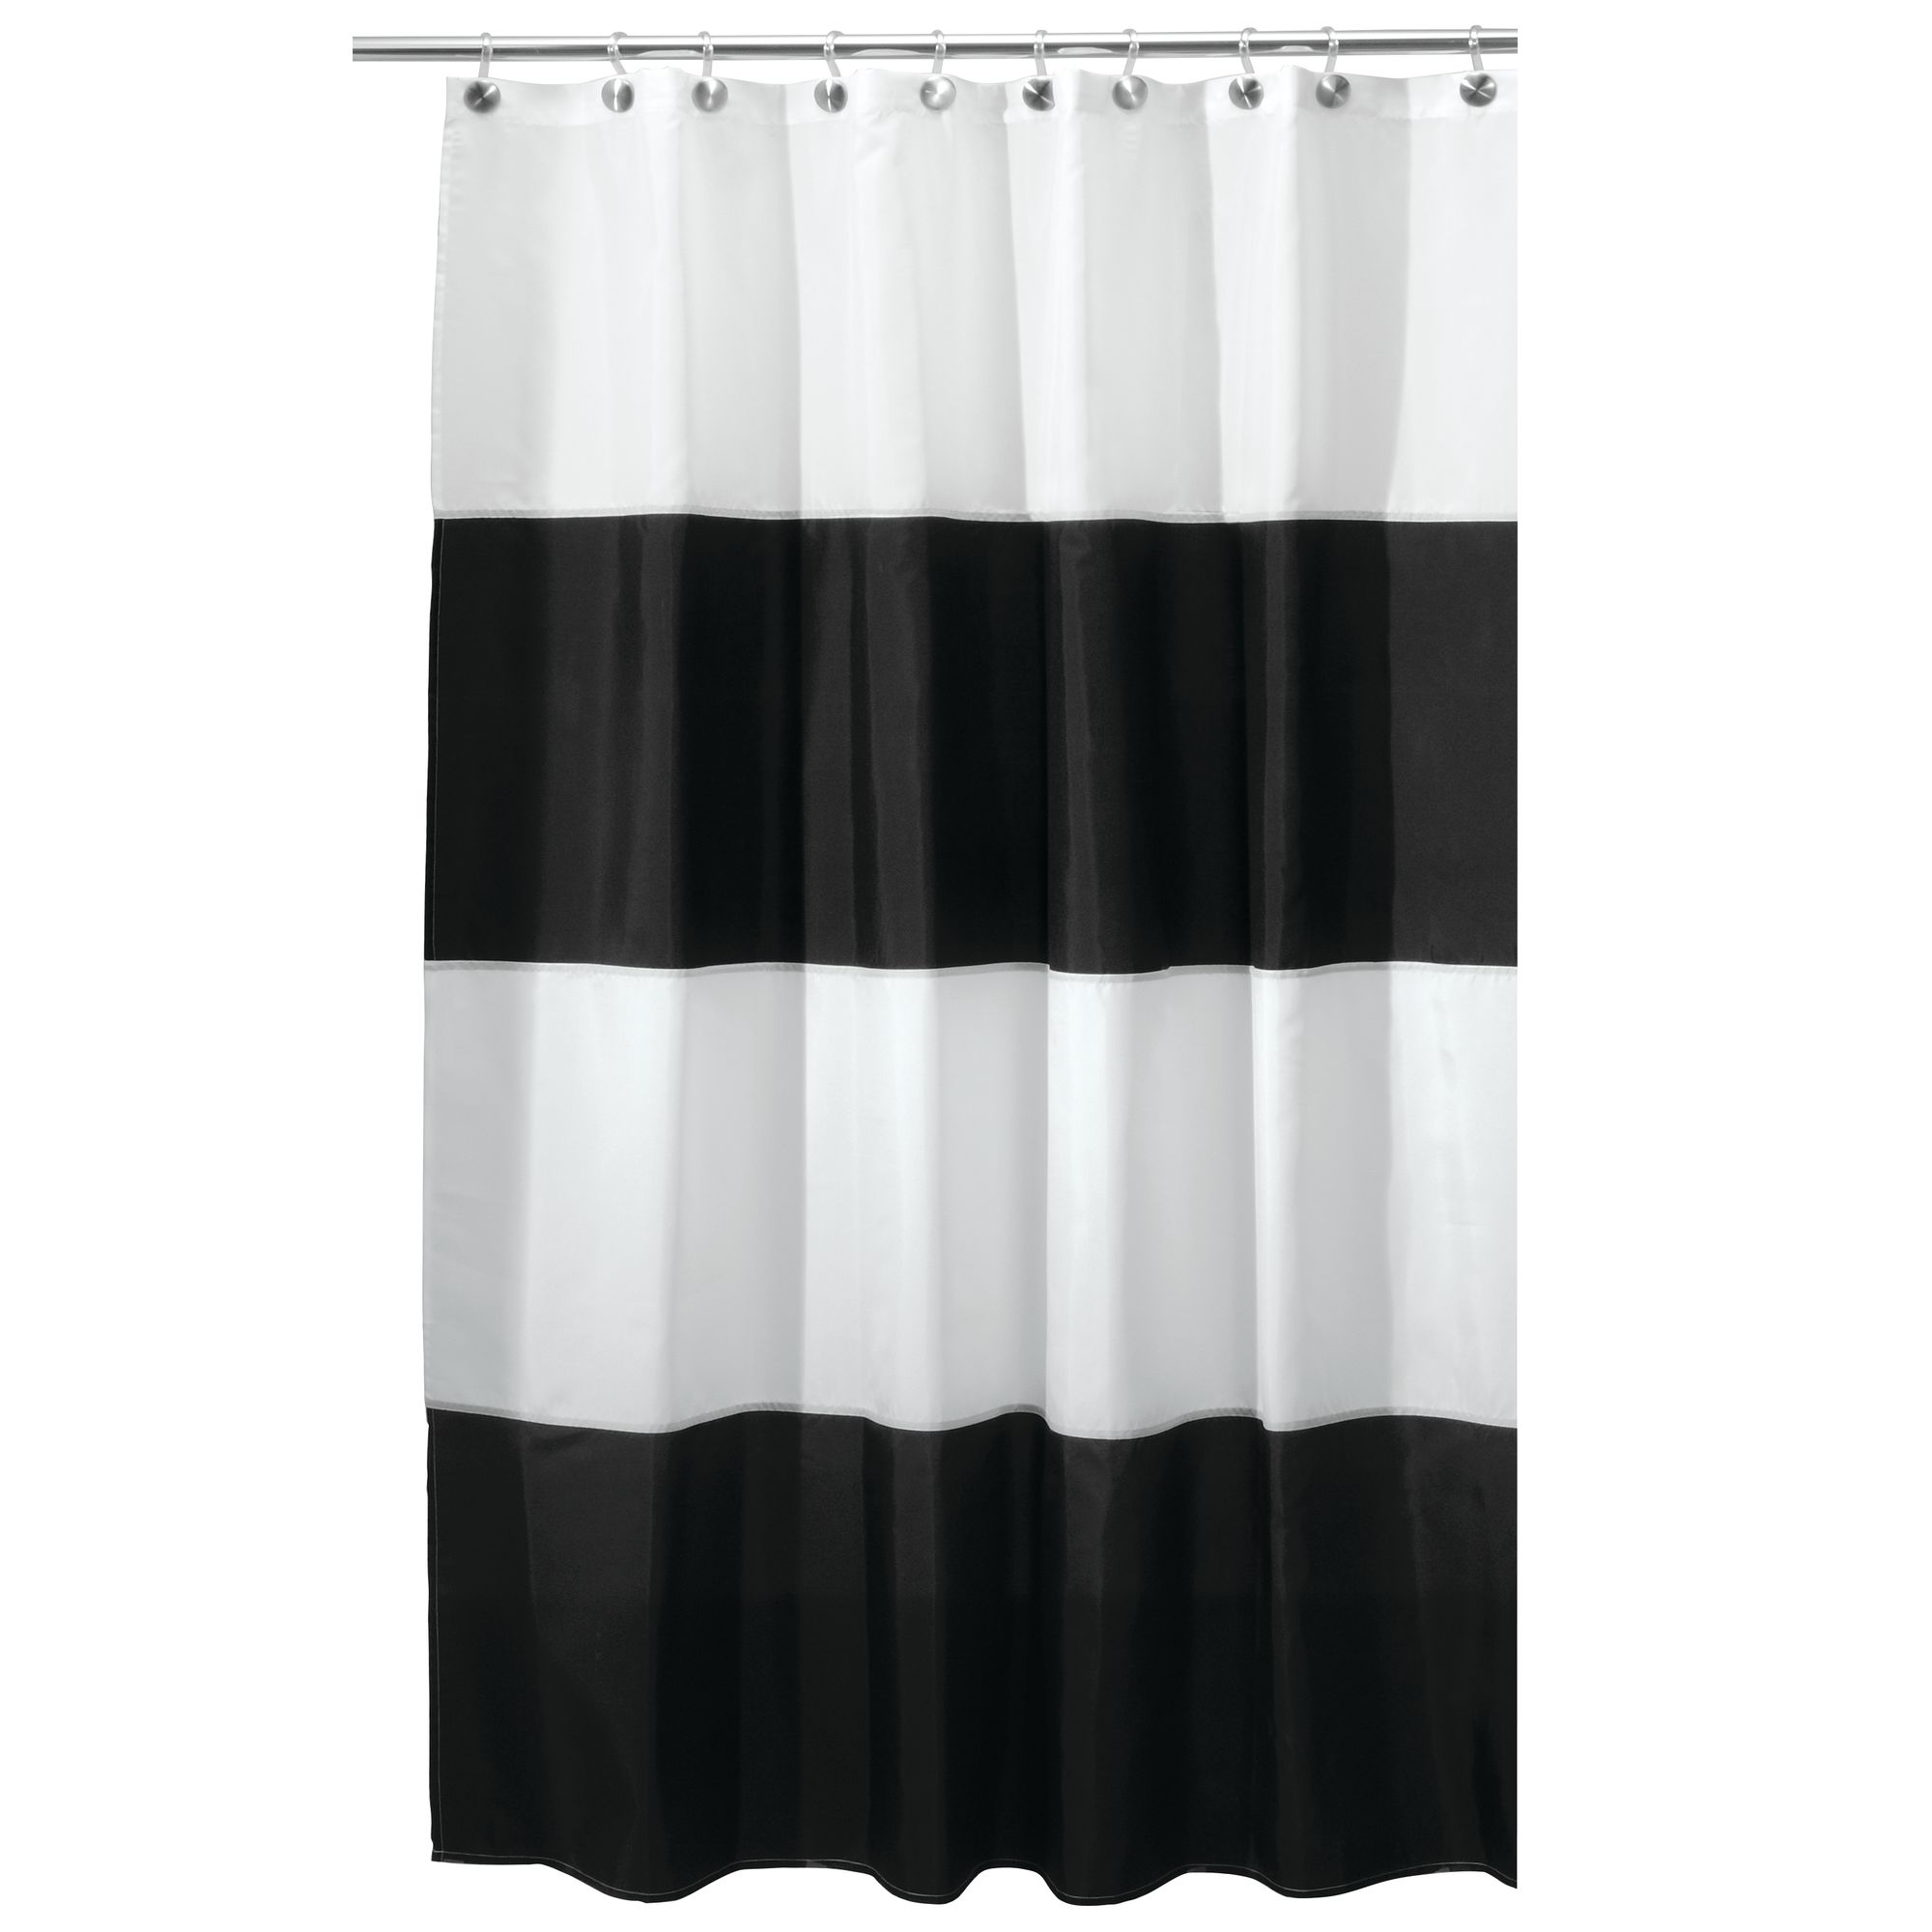 InterDesign Zeno Fabric Shower Curtain, Stall 54" x 78", Black/White - image 1 of 5